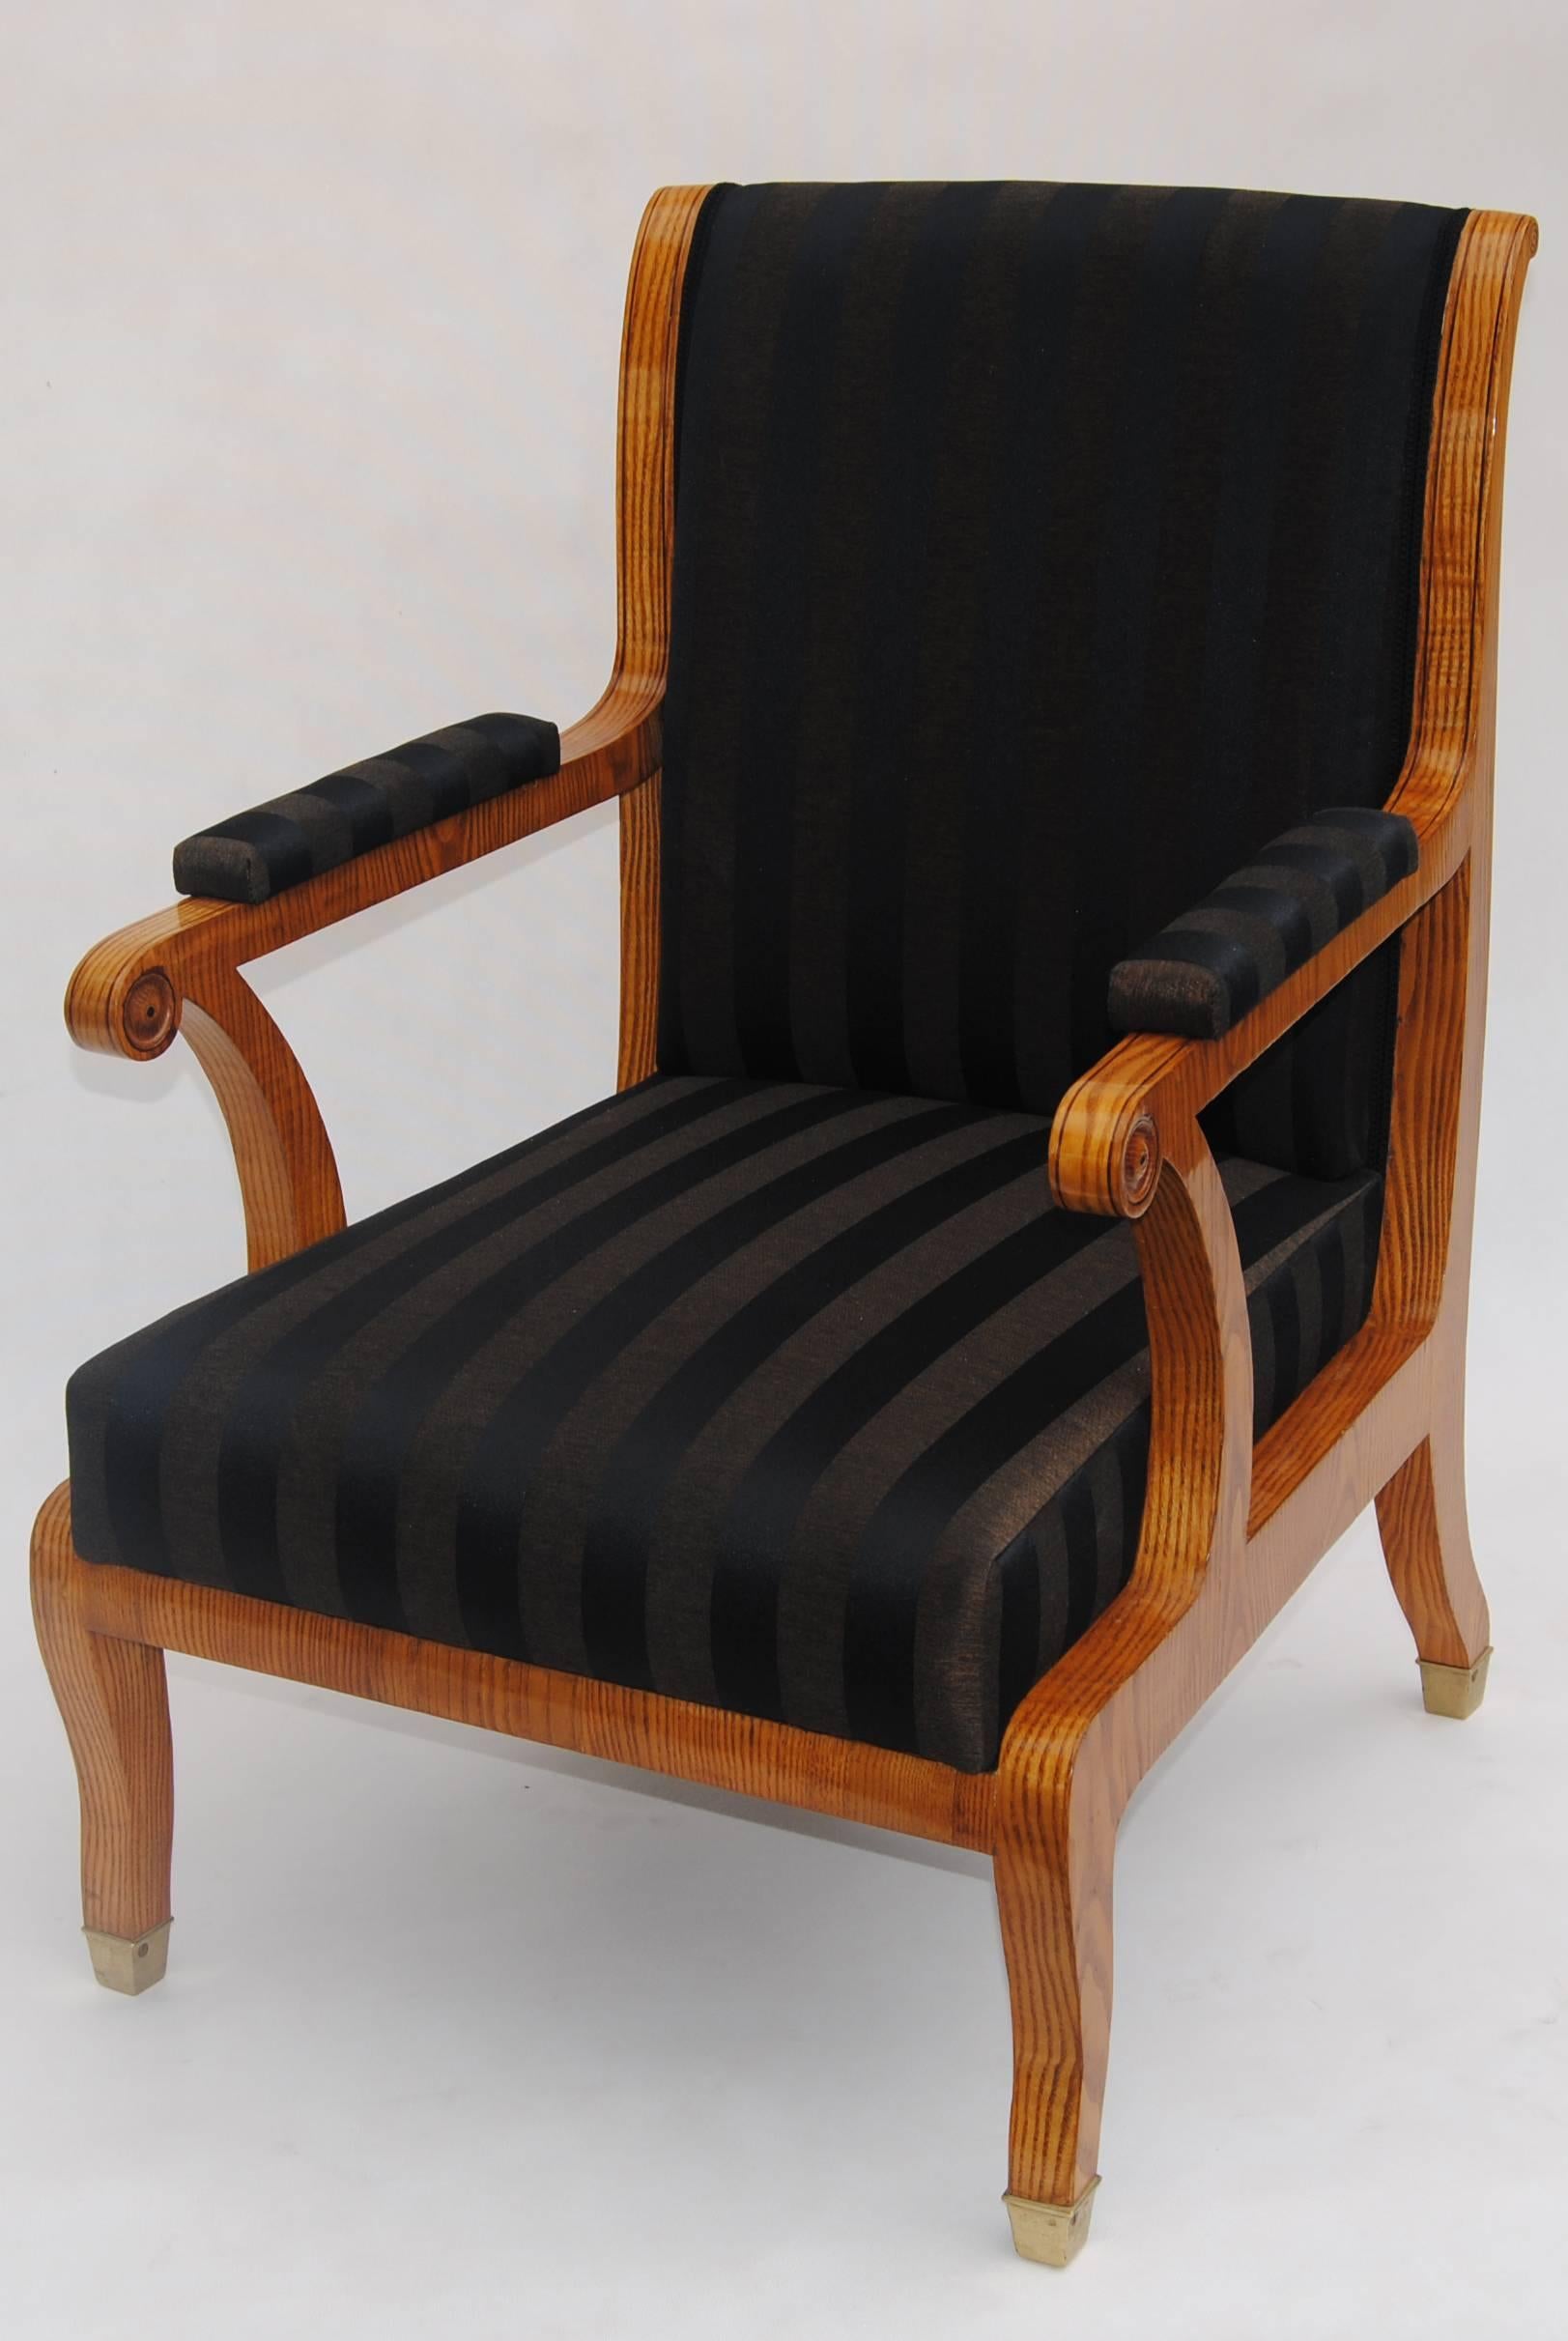 Pair of Biedermeier armchairs.
Ash-tree veneer. 
Shellac polish. 
Completely restored. 
New upholstery.